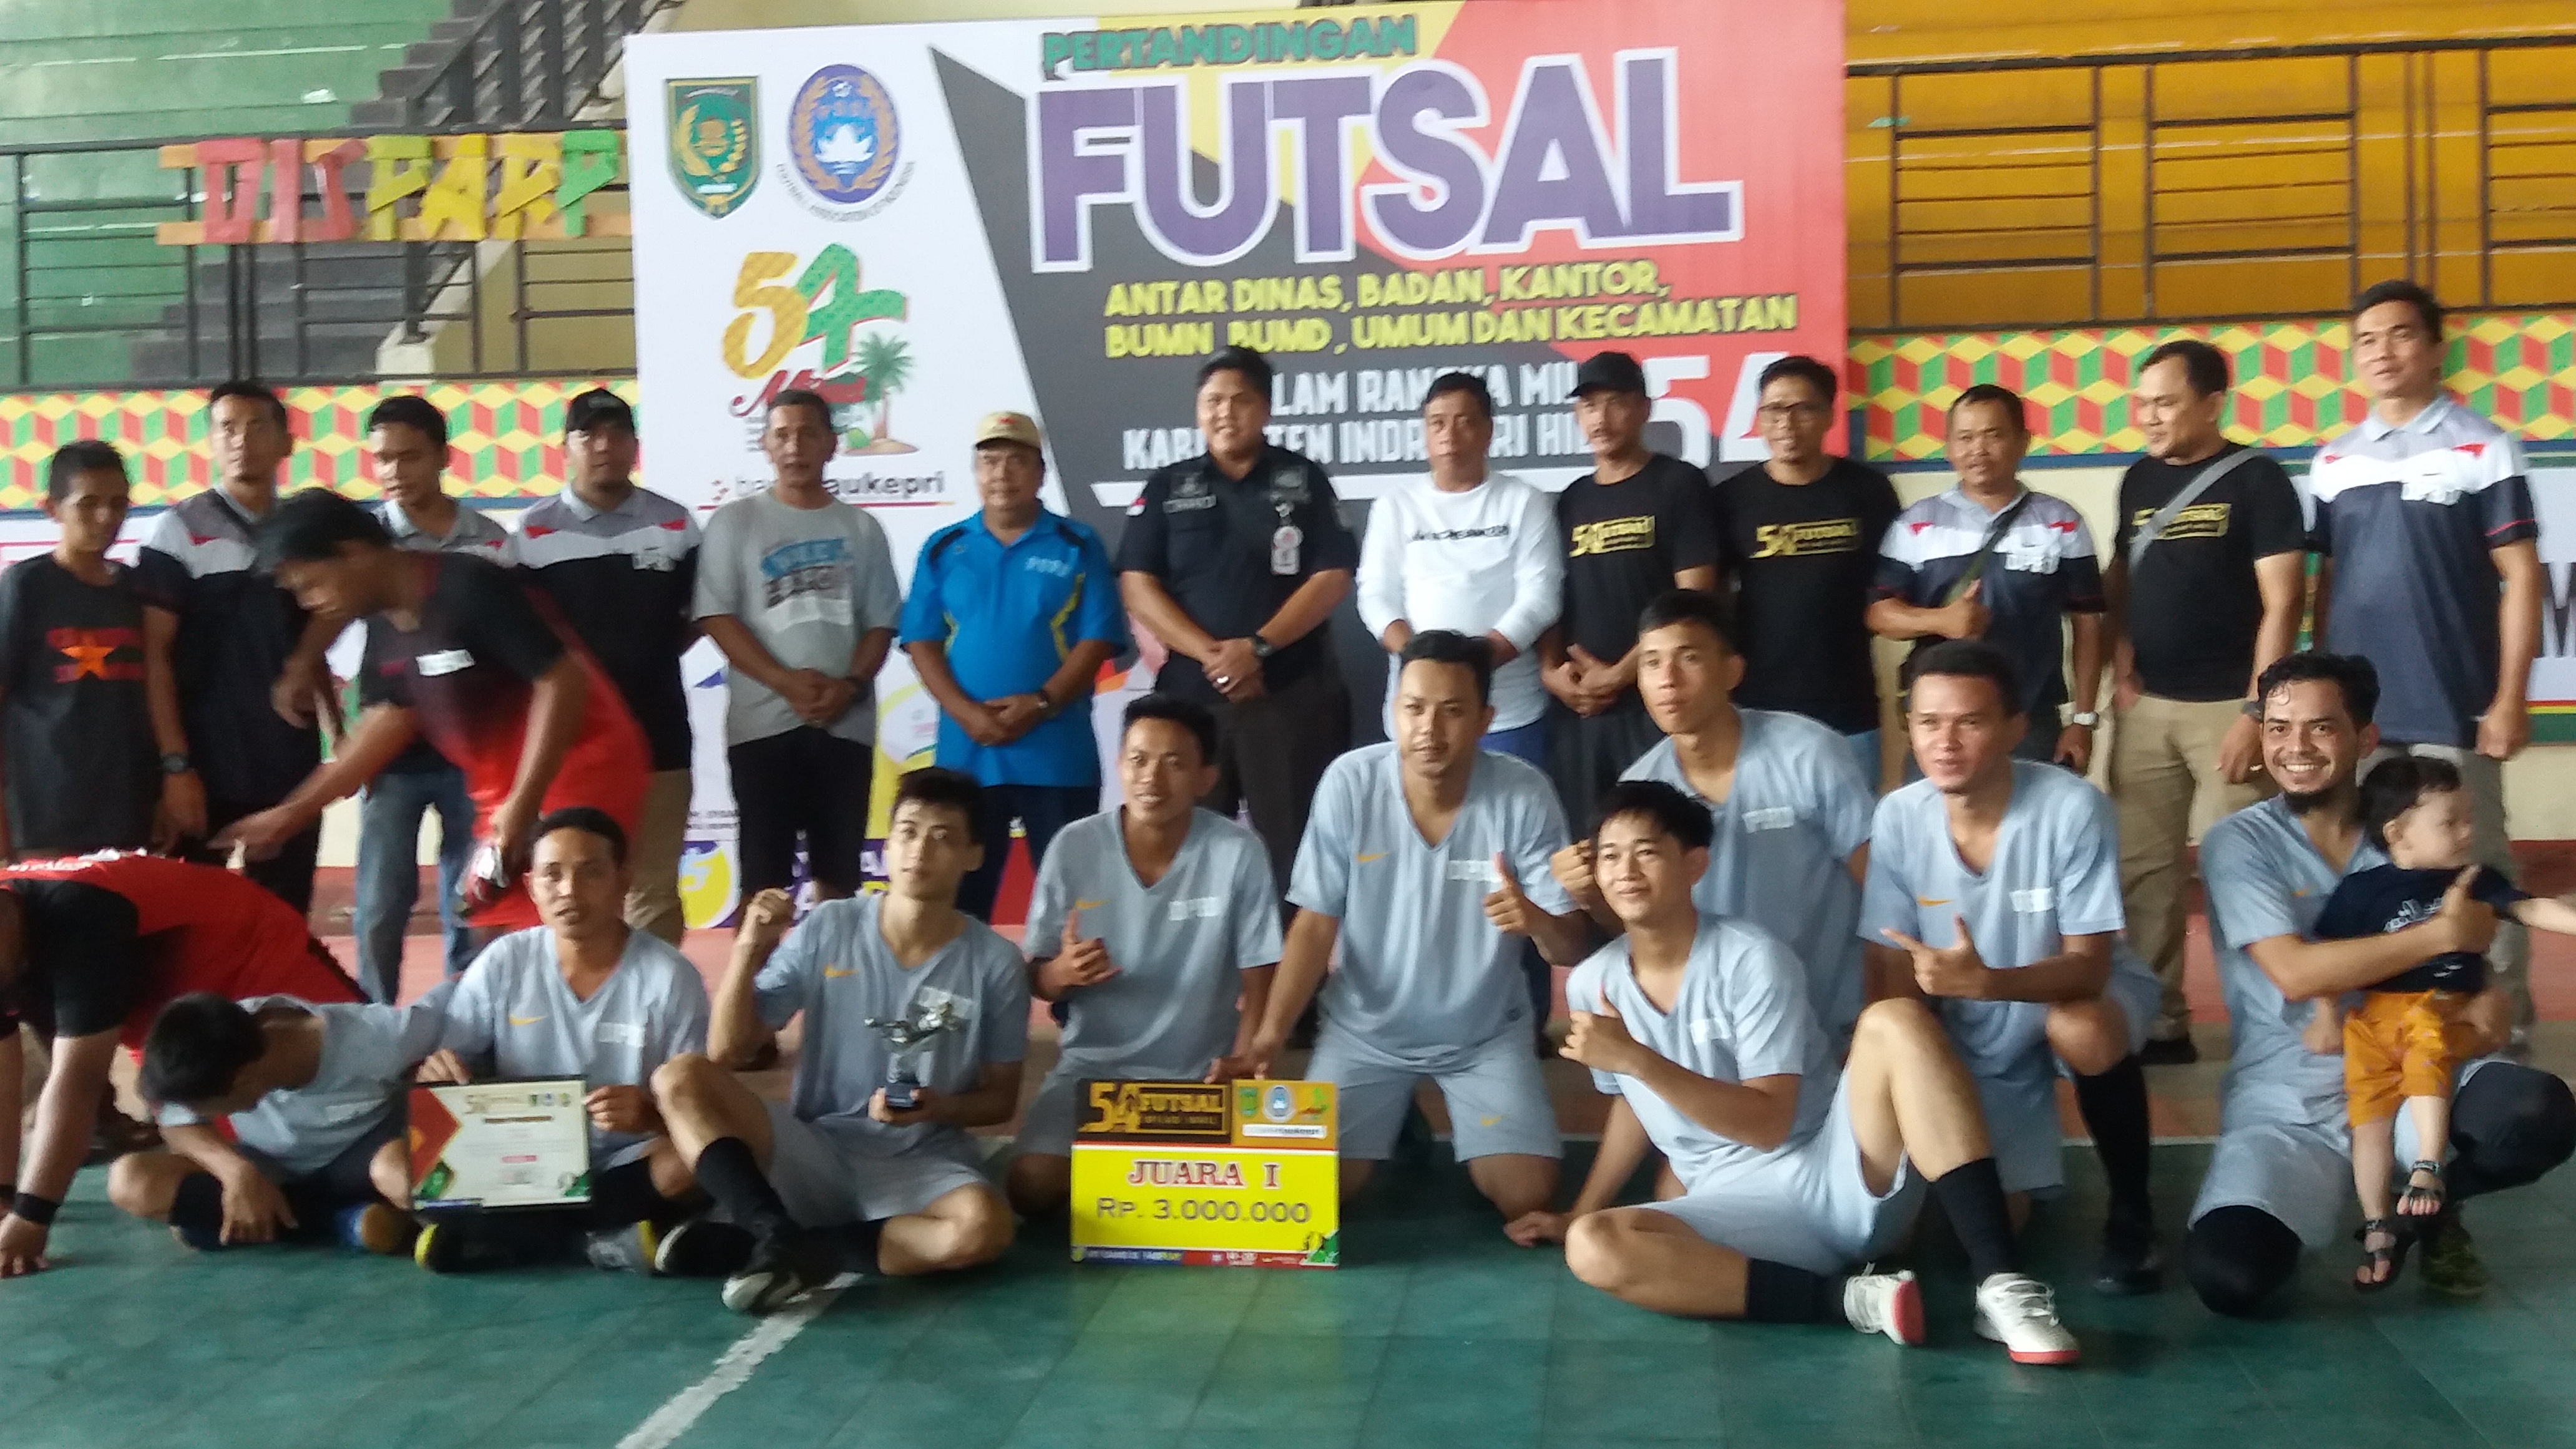 Turnamen Futsal Milad Inhil ke 54 Kategori Instansi dan Umum Sukses Dilaksanakan